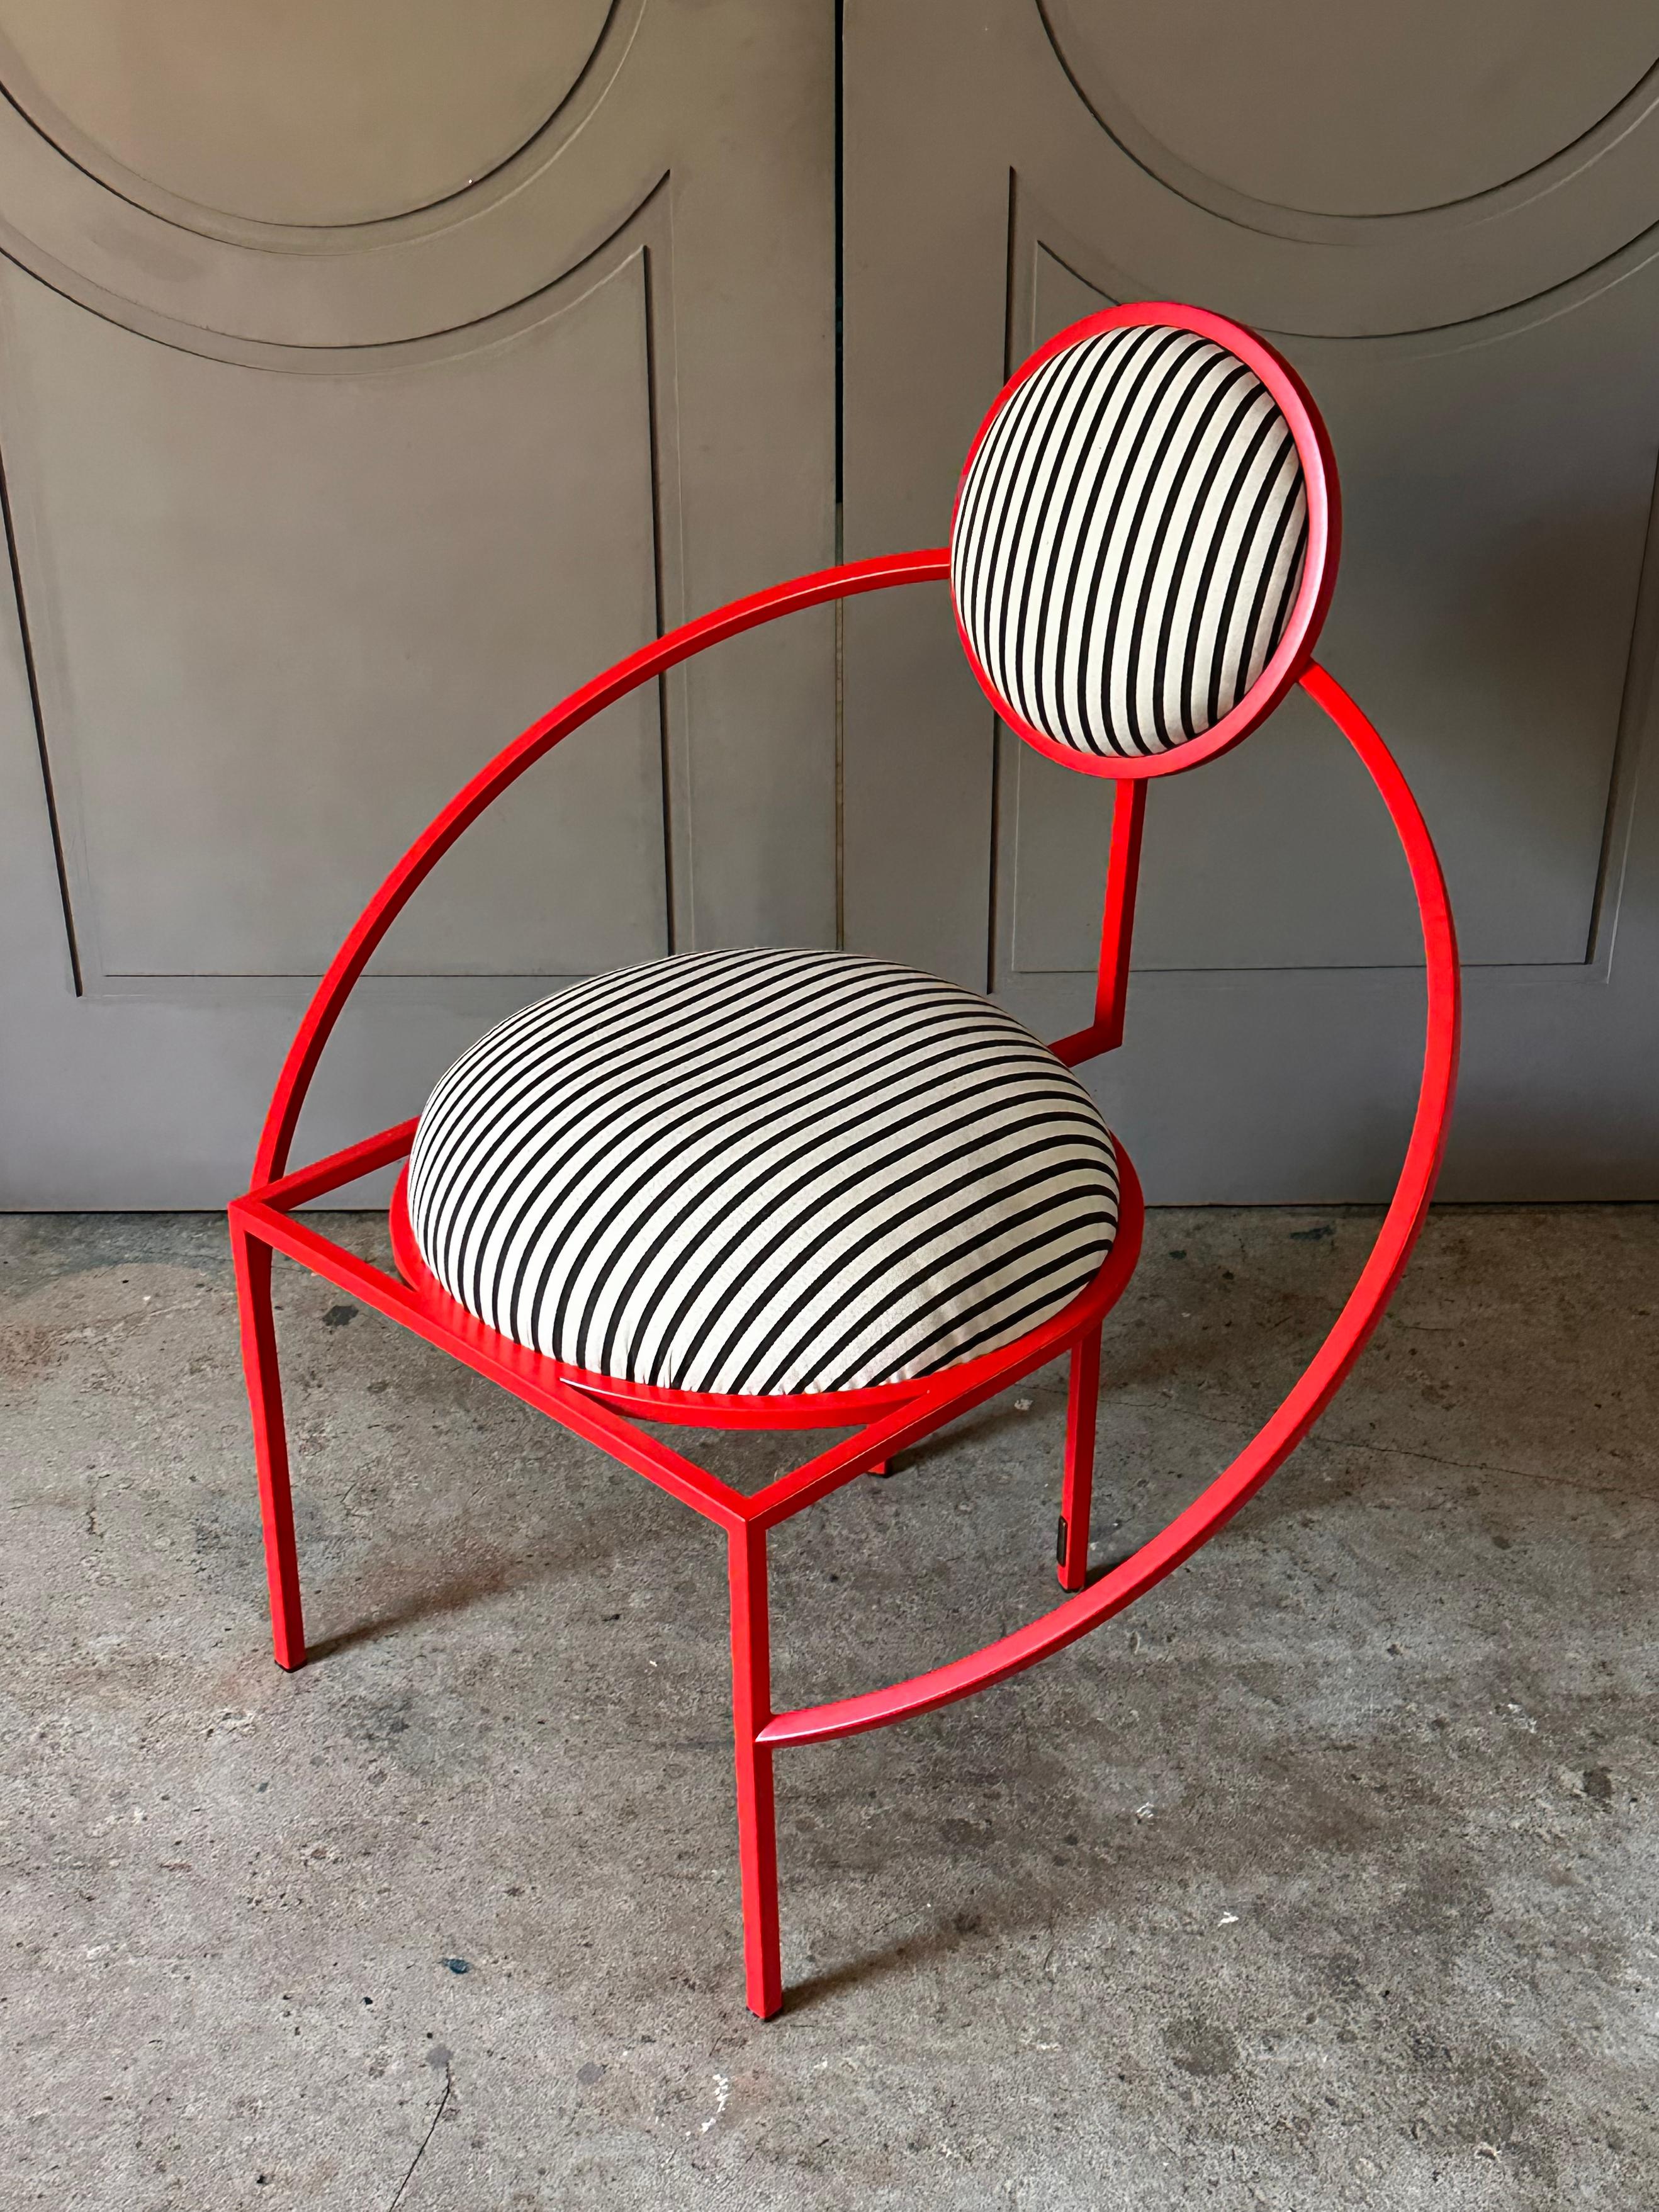 Der Orbit Chair ist jetzt auch in einer Ausführung für den Außenbereich erhältlich und kann das ganze Jahr über draußen stehen bleiben, auch im Winter. Das Gestell ist aus pulverbeschichtetem Edelstahl gefertigt, um es vor Rost zu schützen. Die